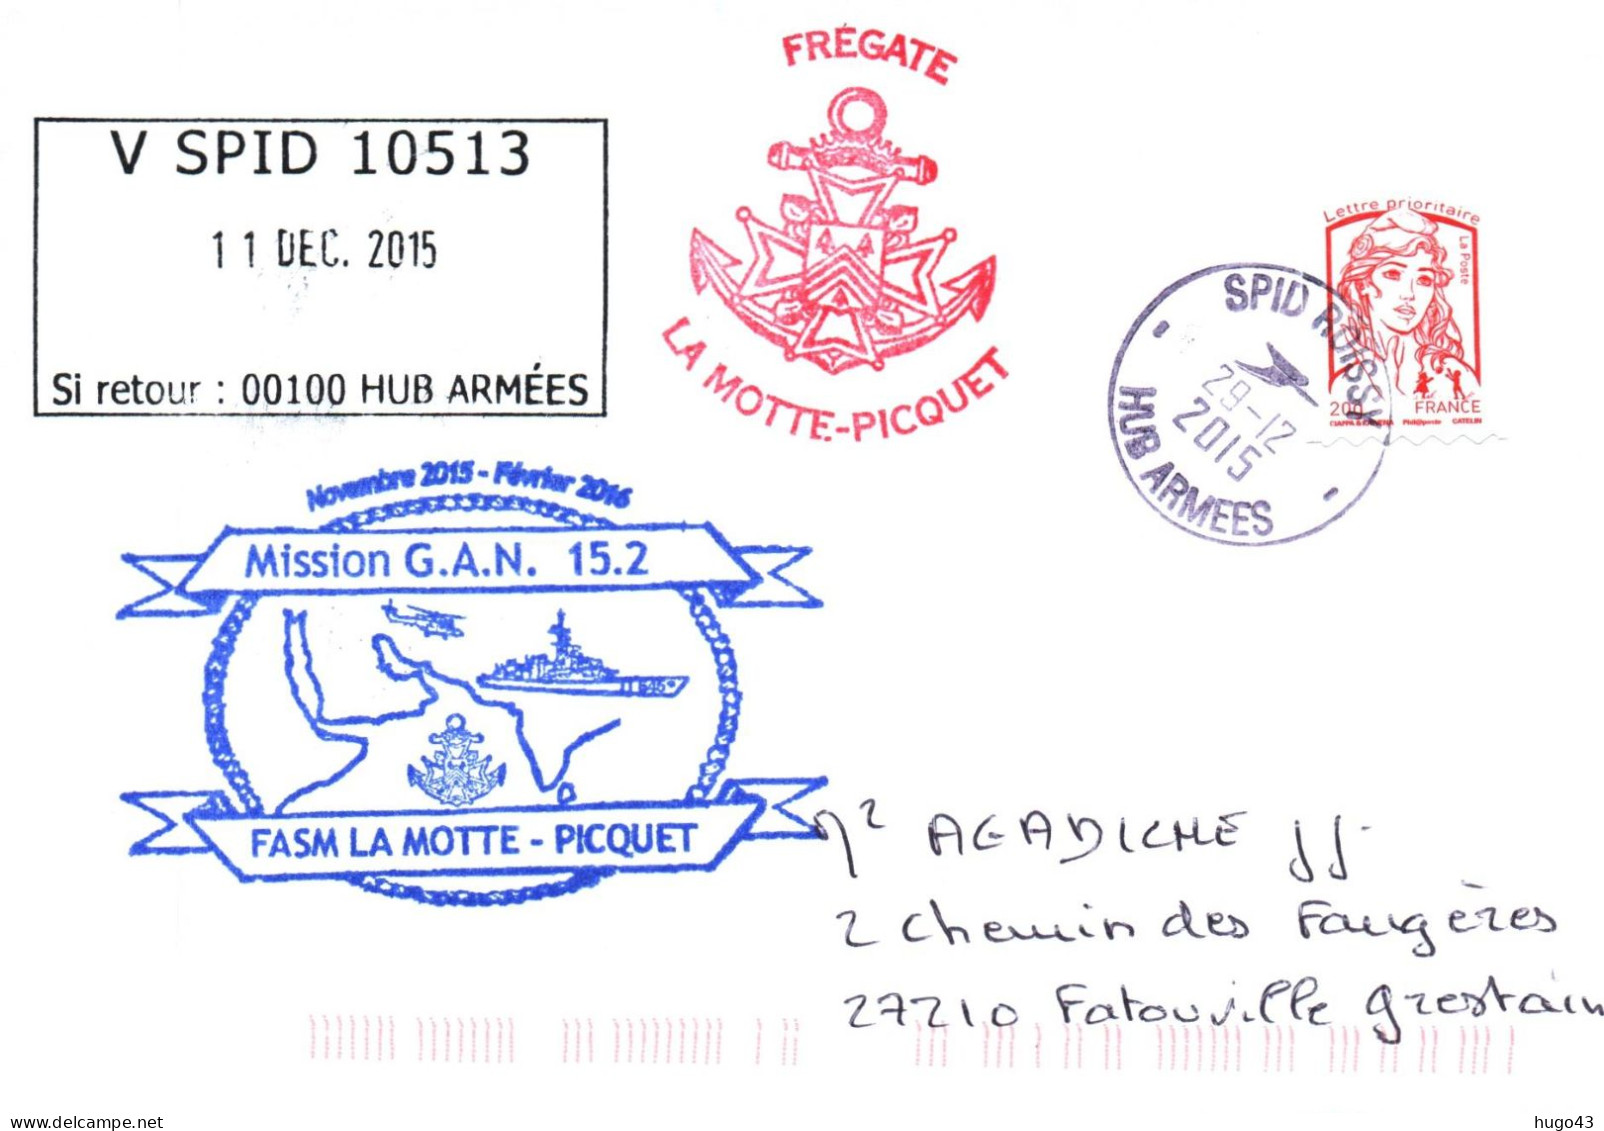 ENVELOPPE AVEC CACHET FREGATE LA MOTTE PICQUET - MISSION G.A.N. 15.2 - SPID ROISSY LE 29 DECEMBRE 2015 - Correo Naval